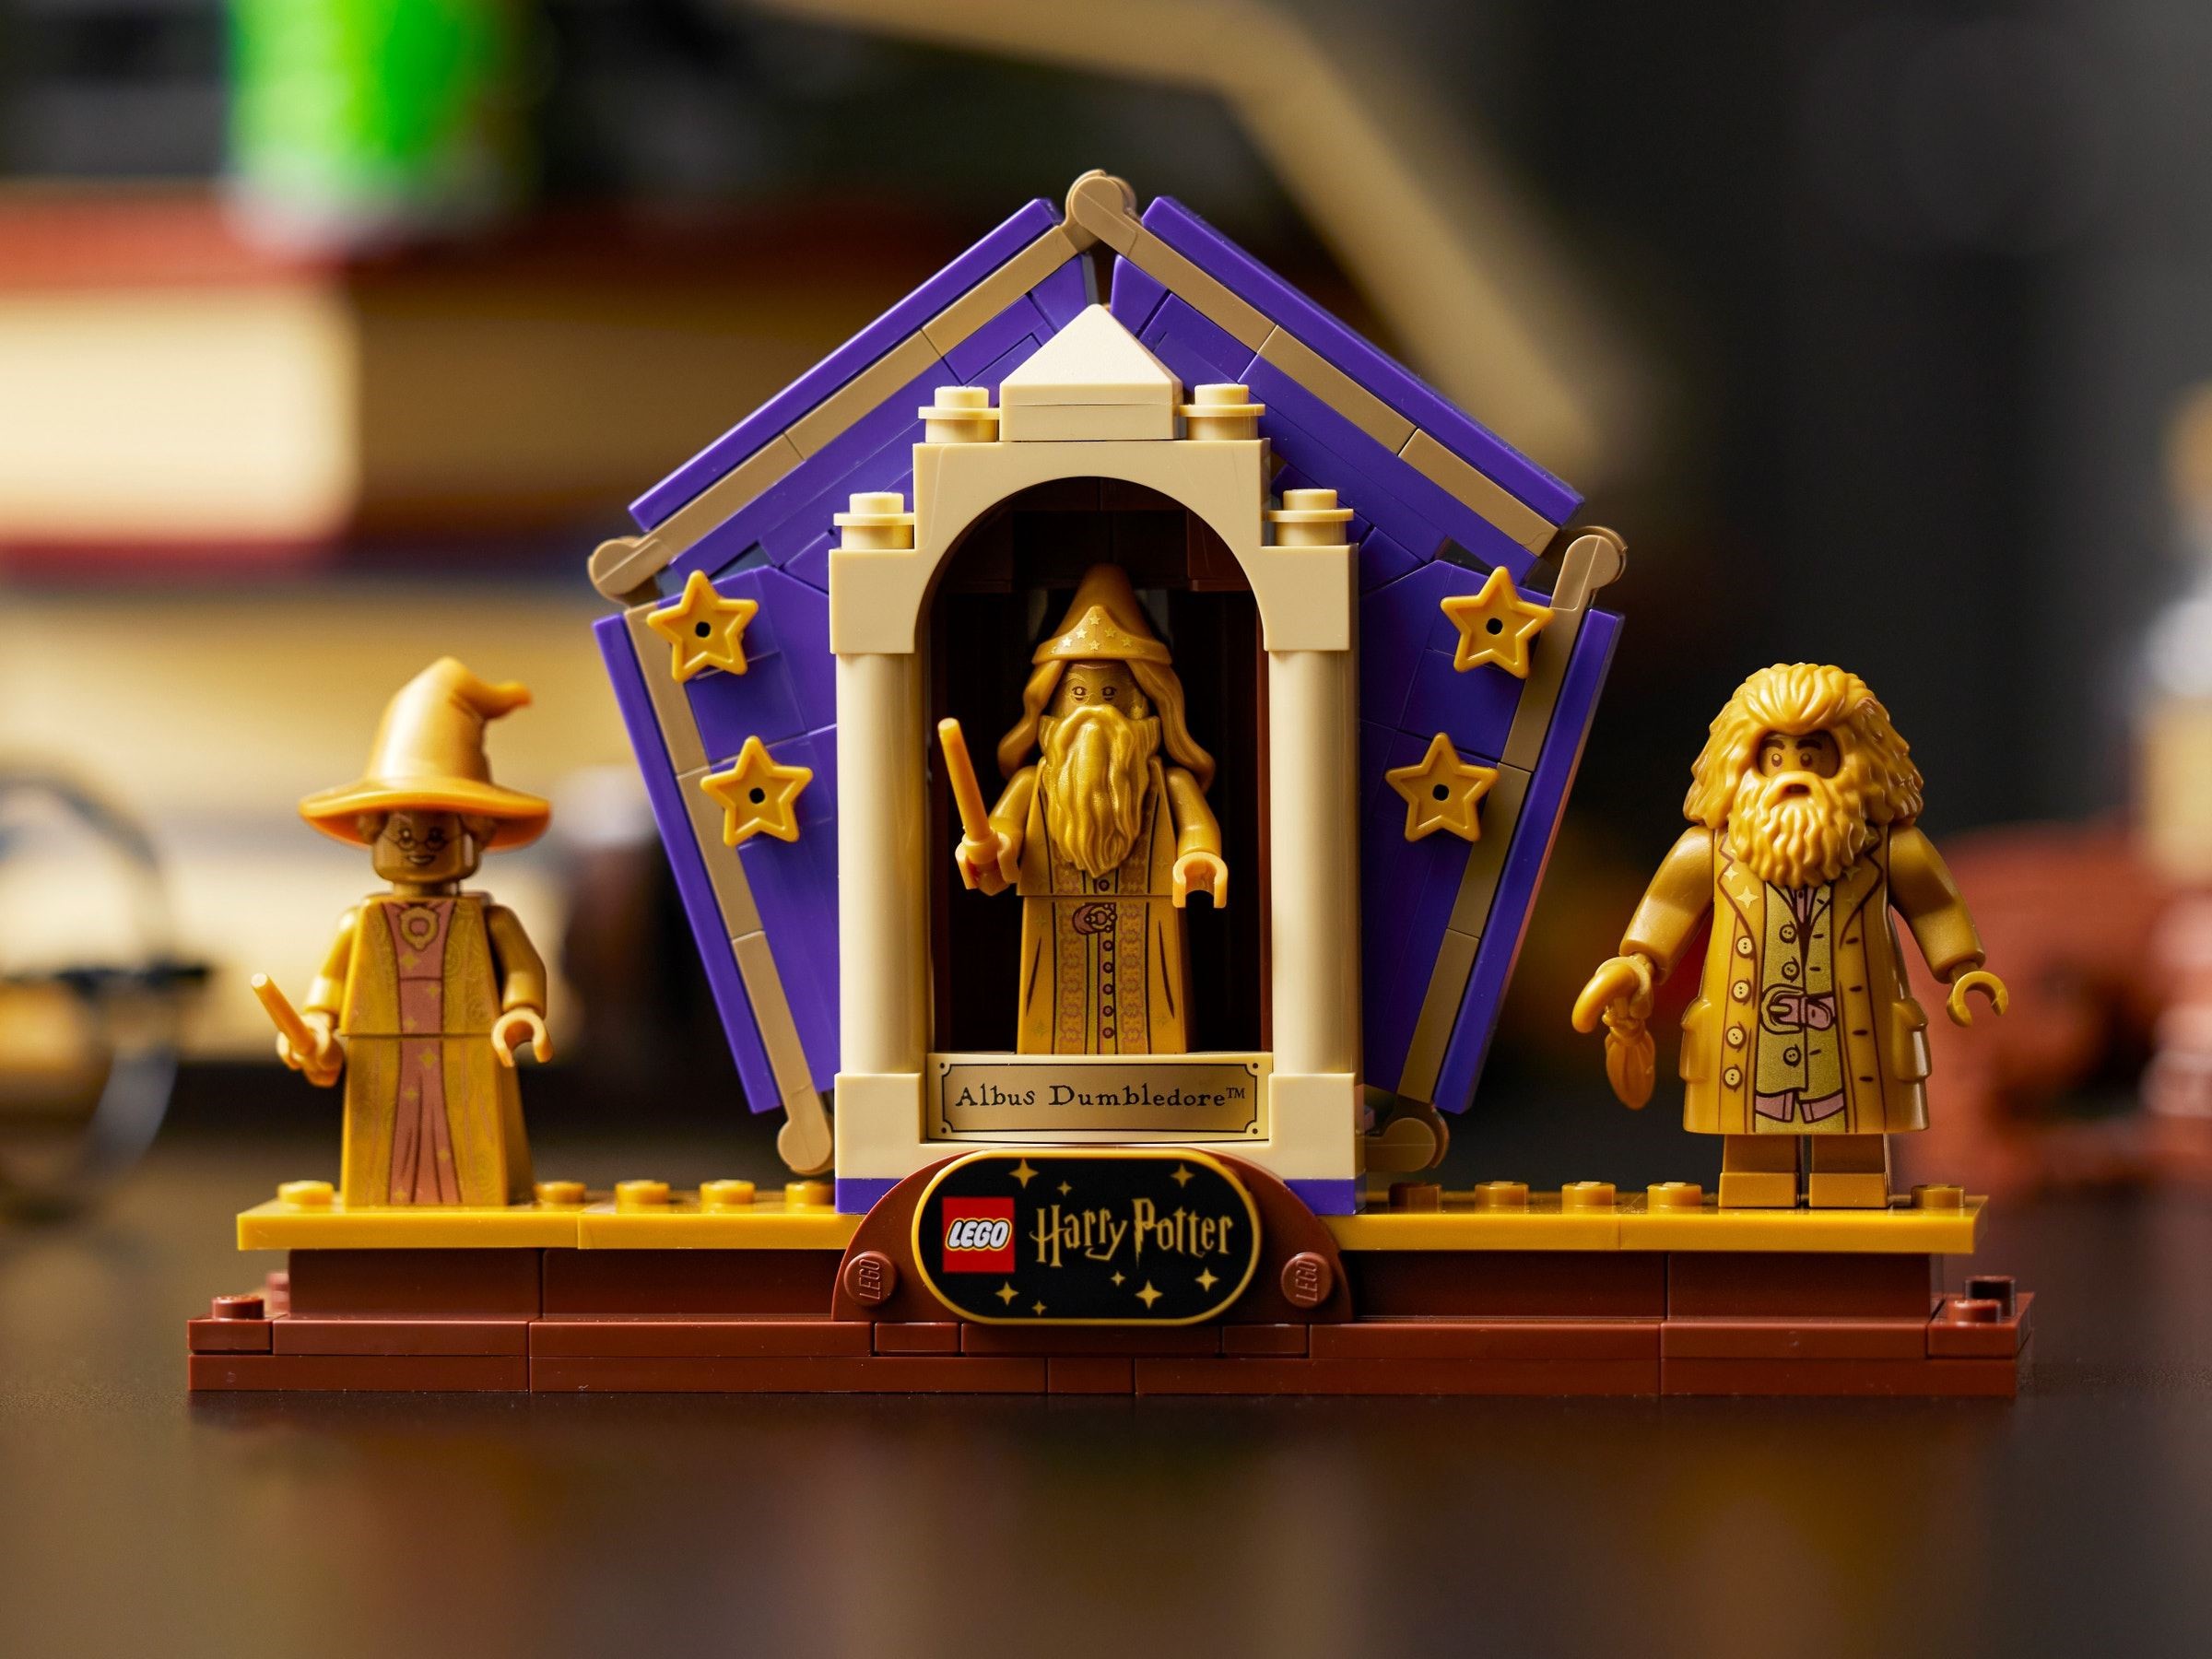 Lego Harry Potter Hogwarts Collectors' Edition Set 76391 : Target